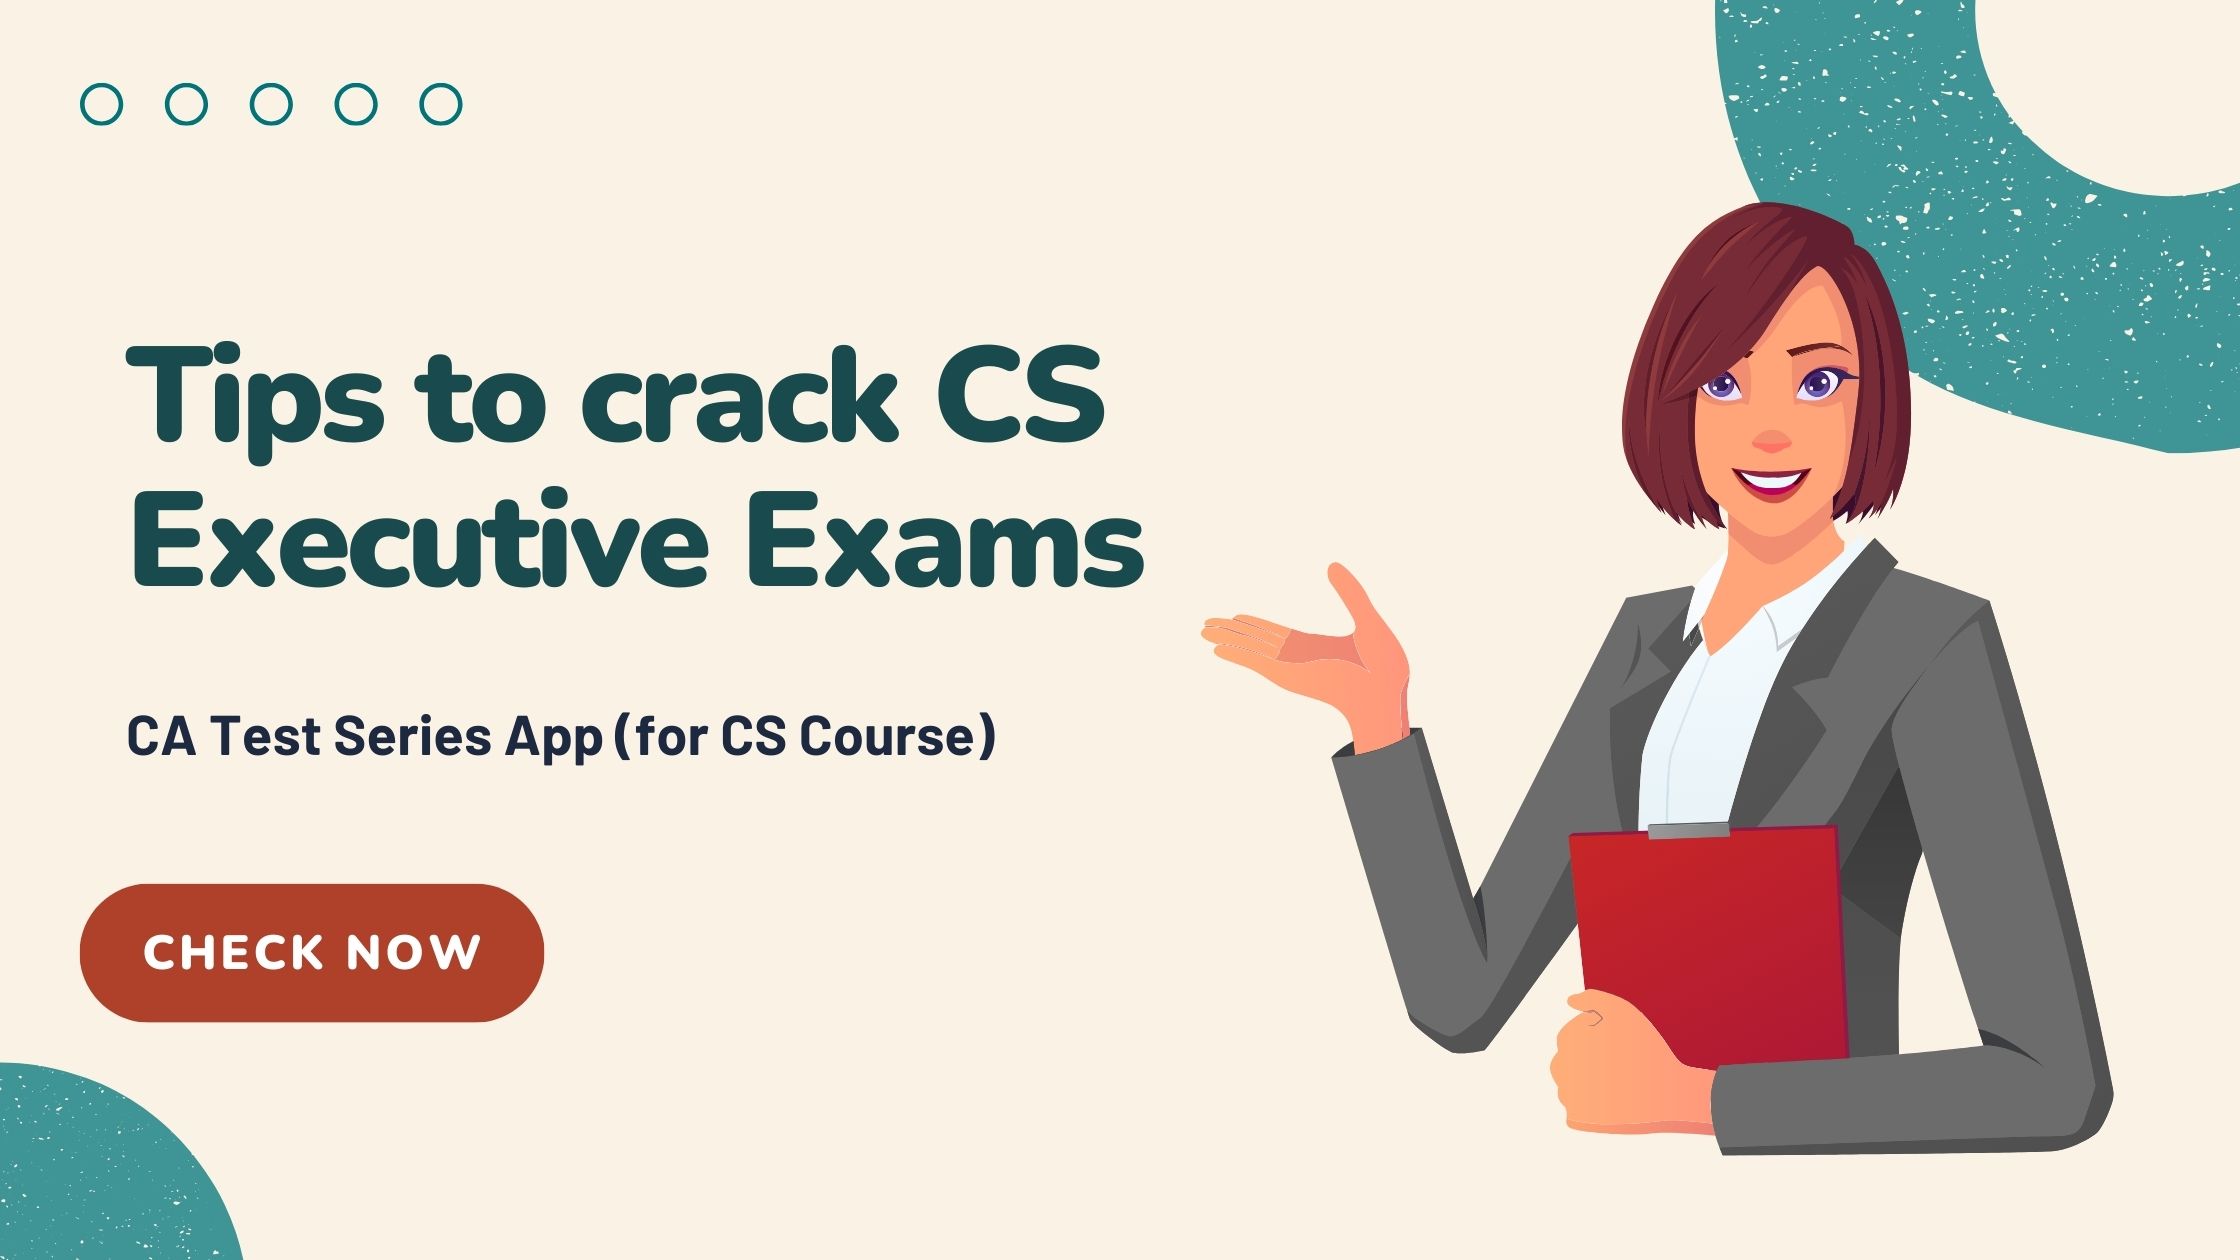 Tips to crack CS Executive Exams